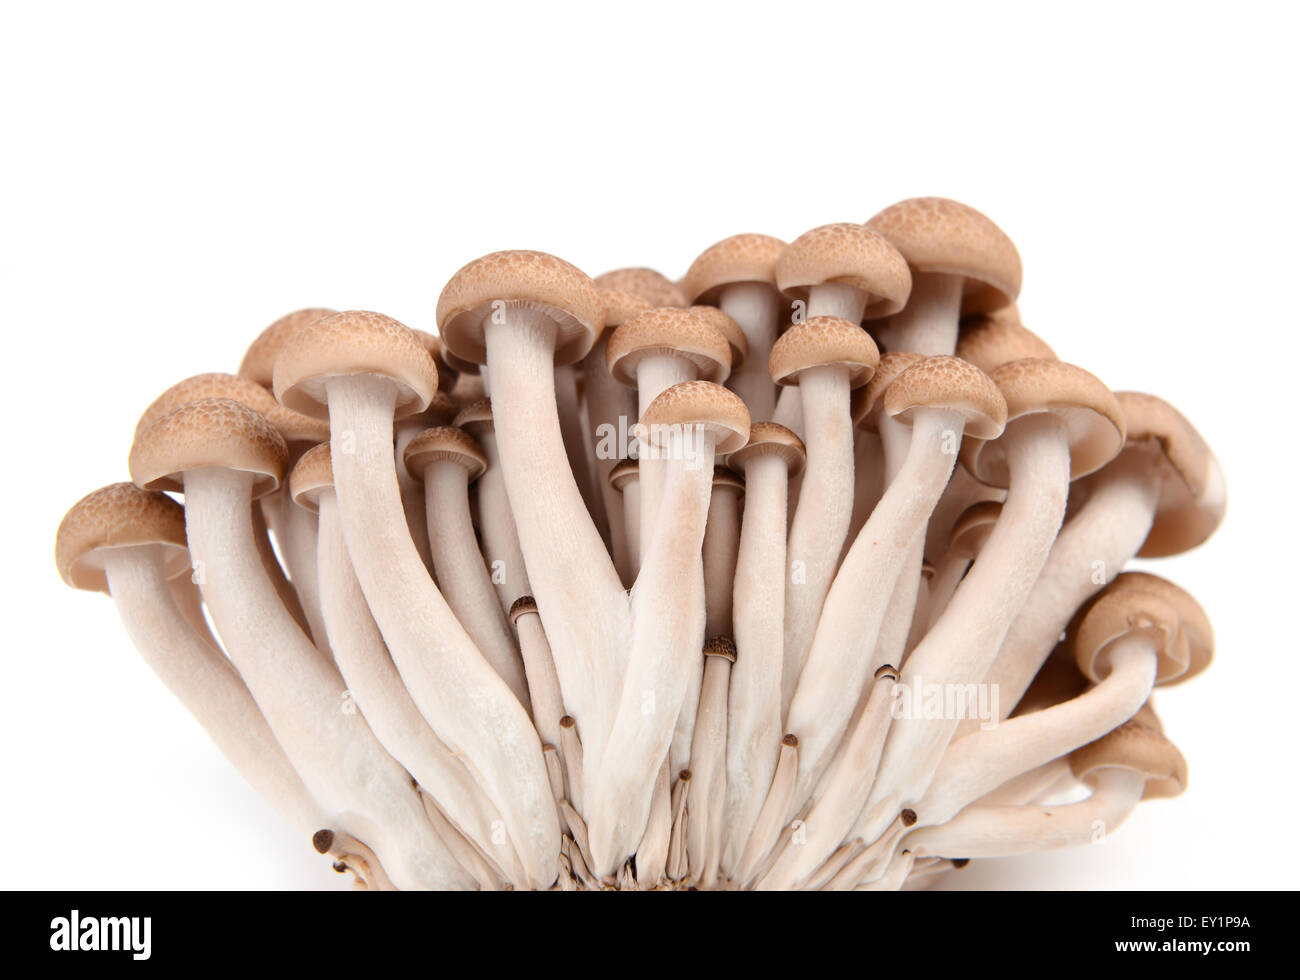 shimeji mushroom isolated on white background Stock Photo